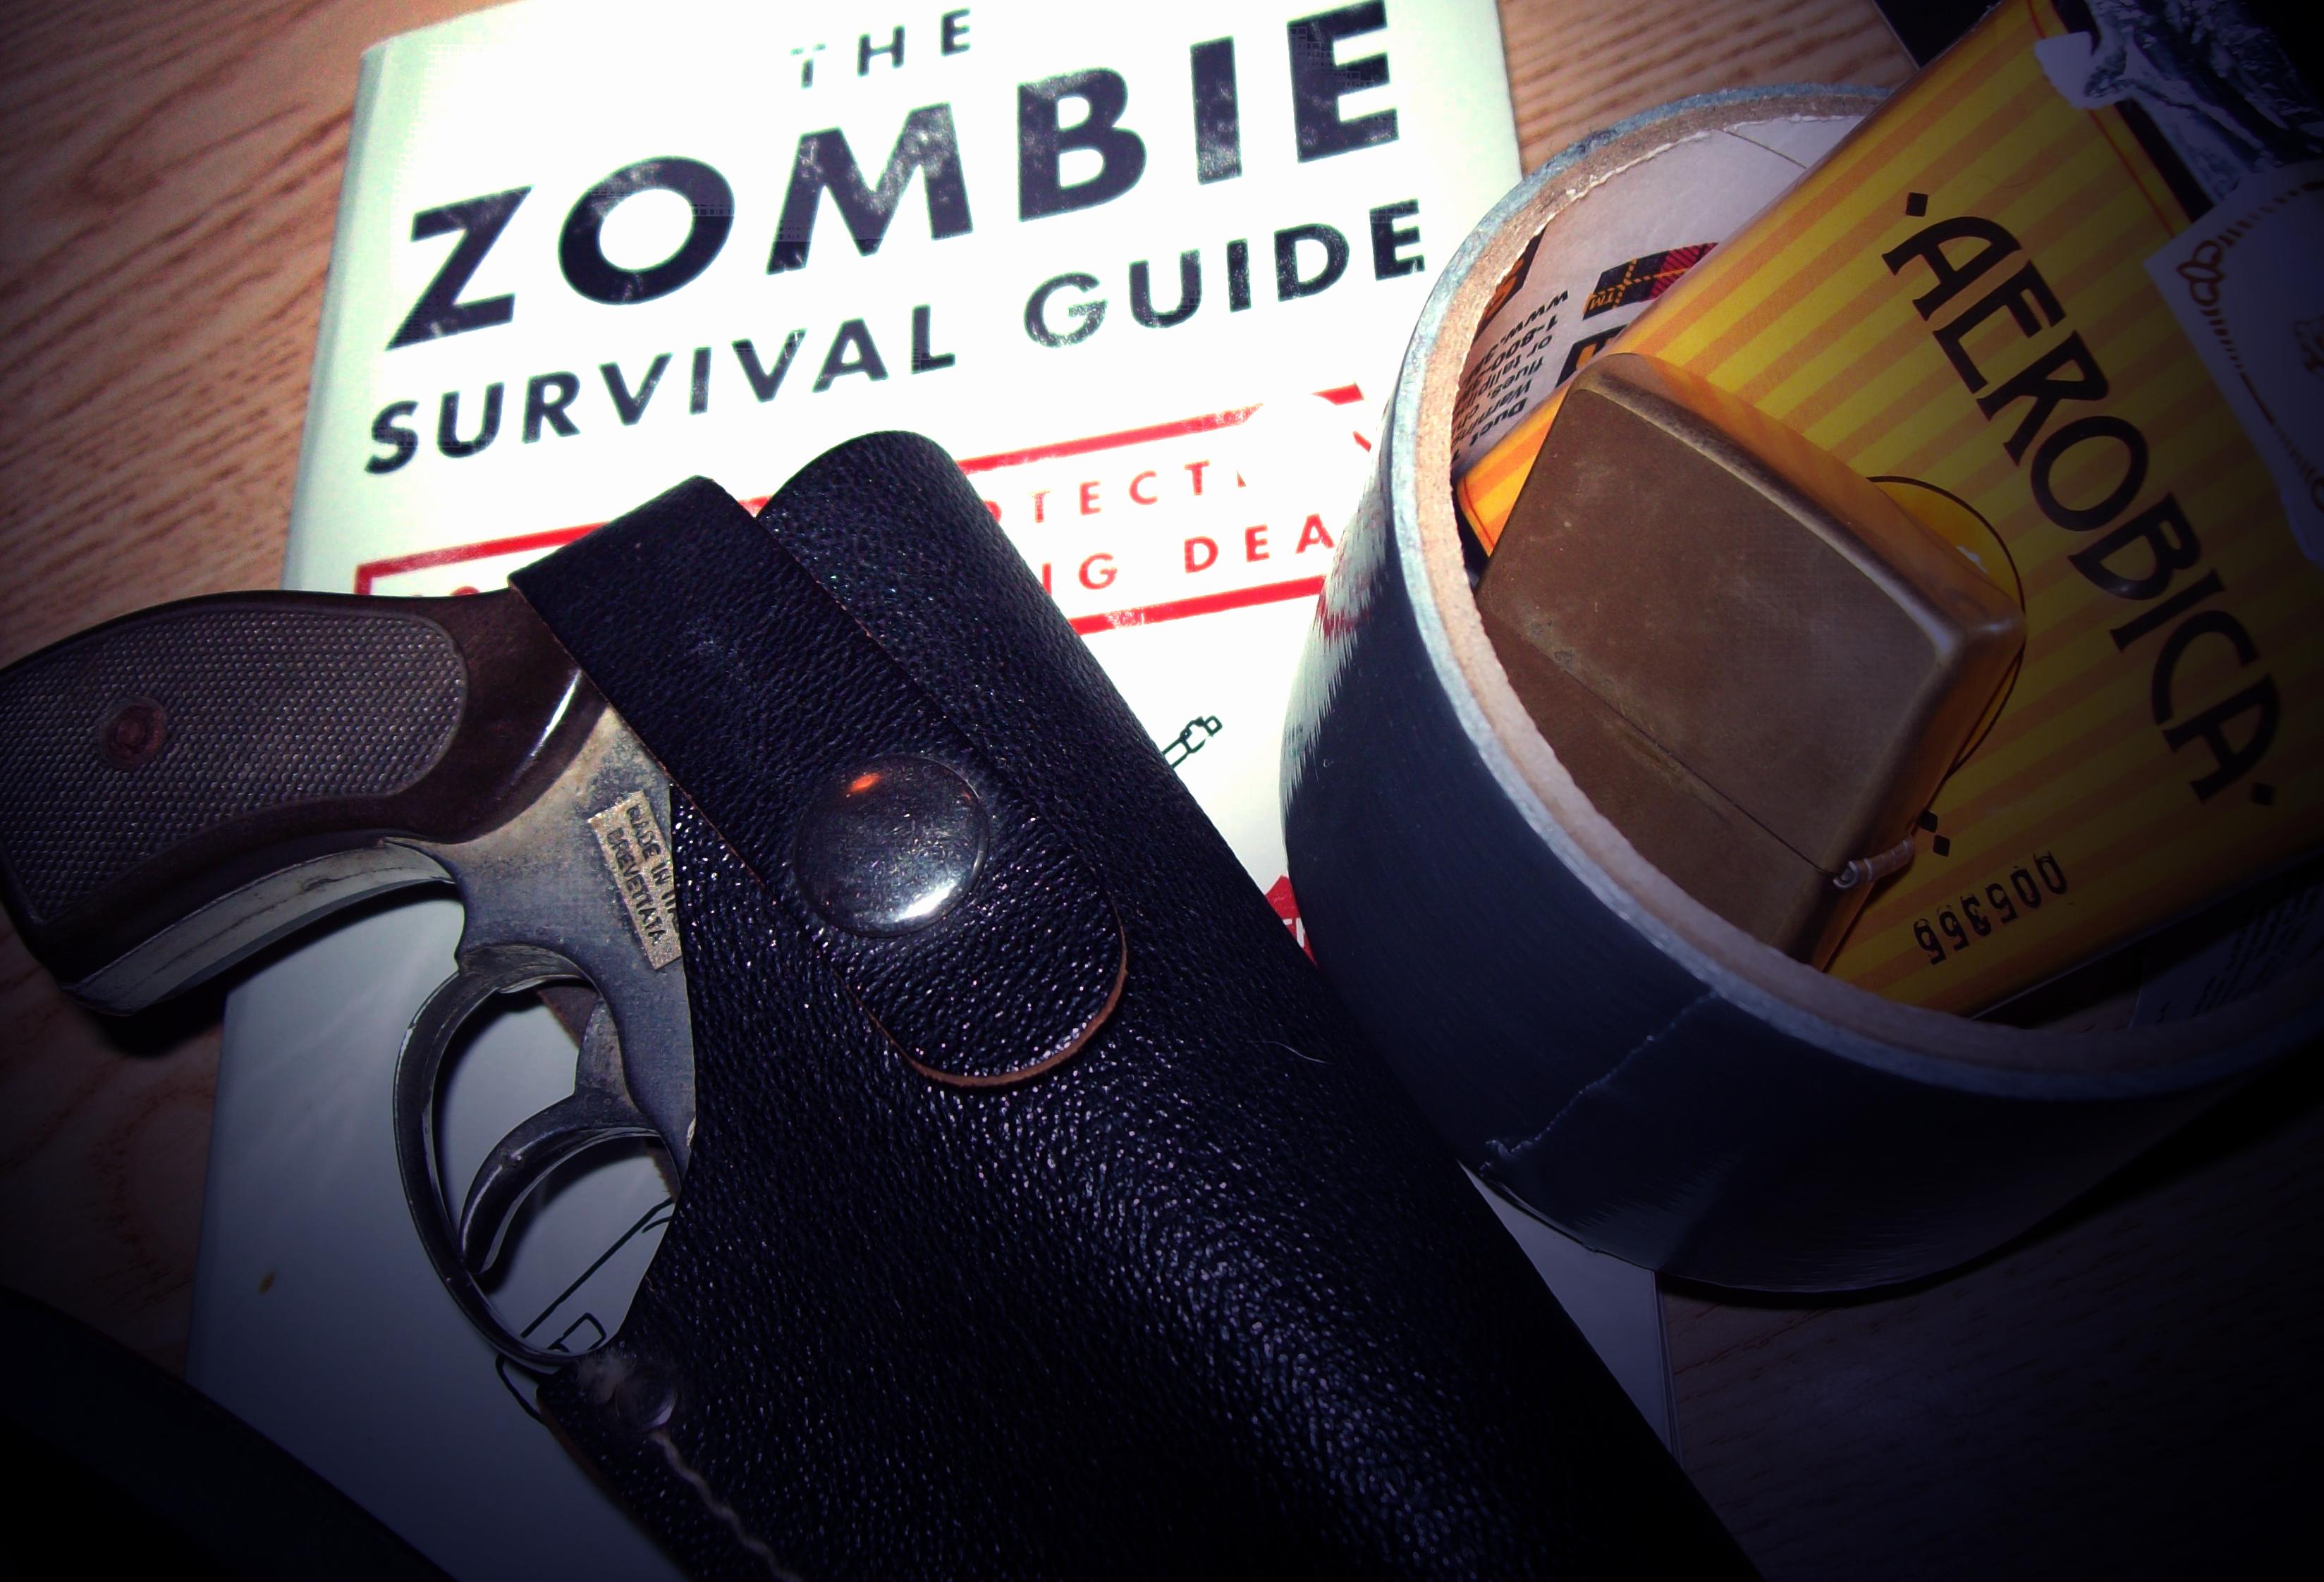 пистолеты, оружие, книги, лист Zombie Survival - обои на рабочий стол